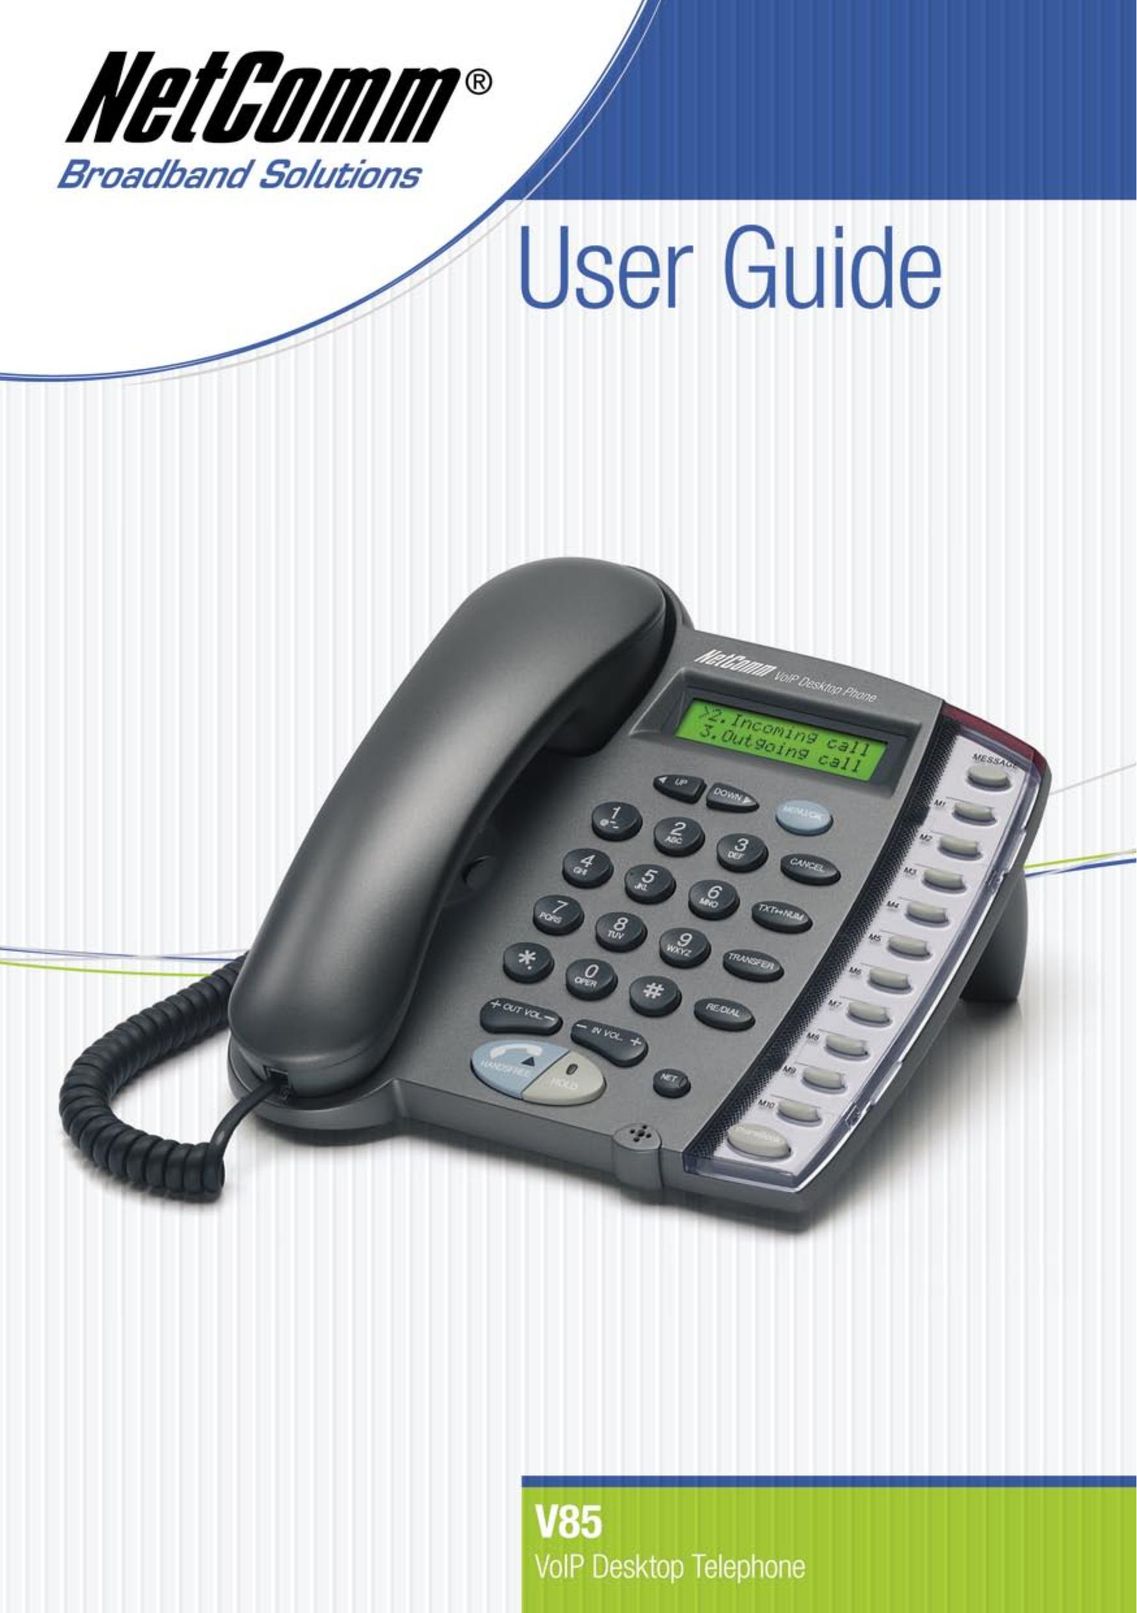 NetComm V85 Telephone User Manual